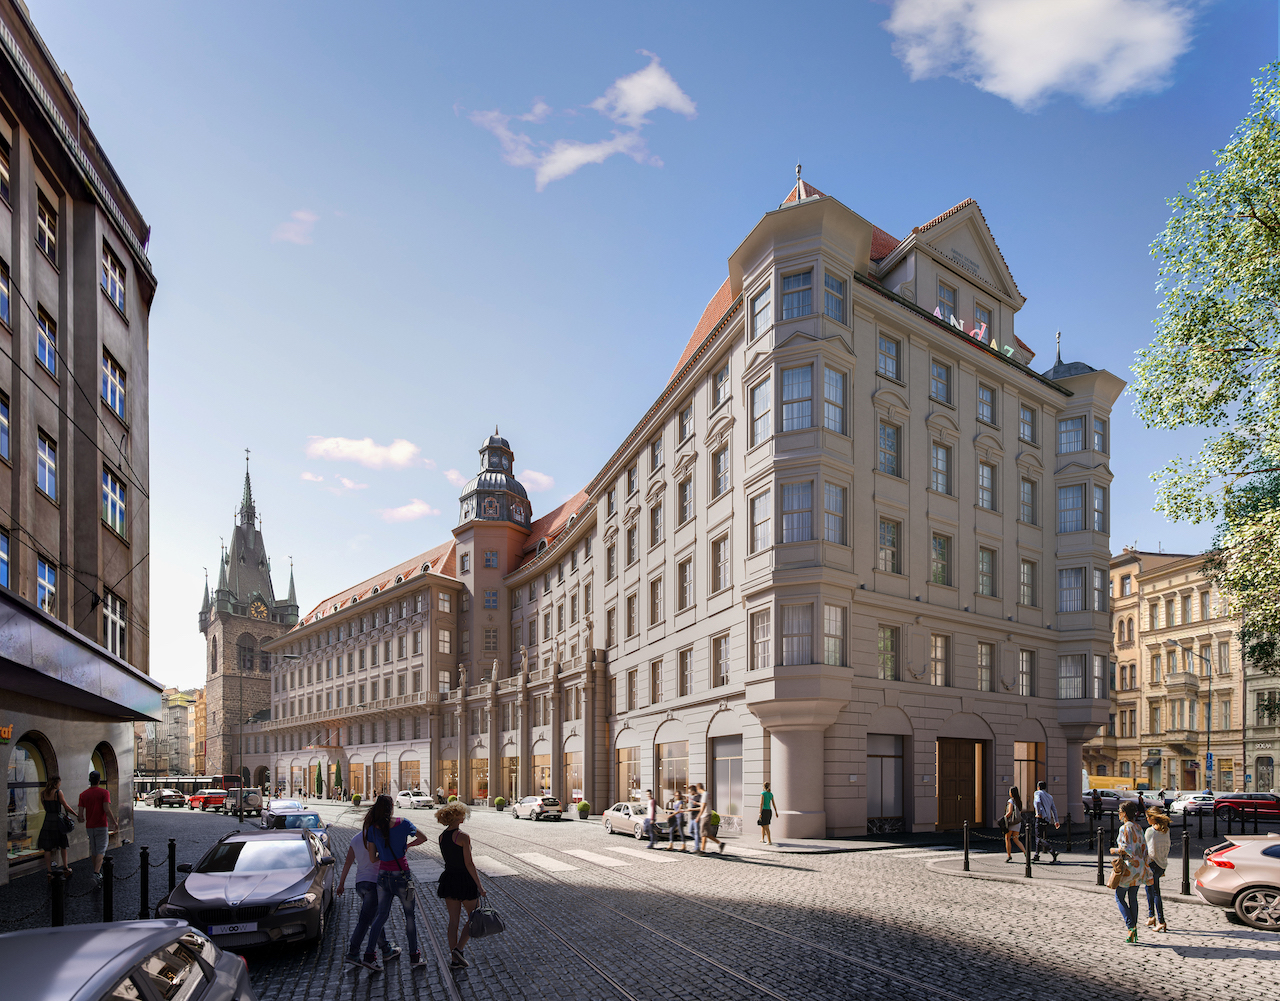 Hotely 1. místo: Cukrovarnický palác – Sugar Palace a jeho rekonstrukce na hotel Andaz Prague